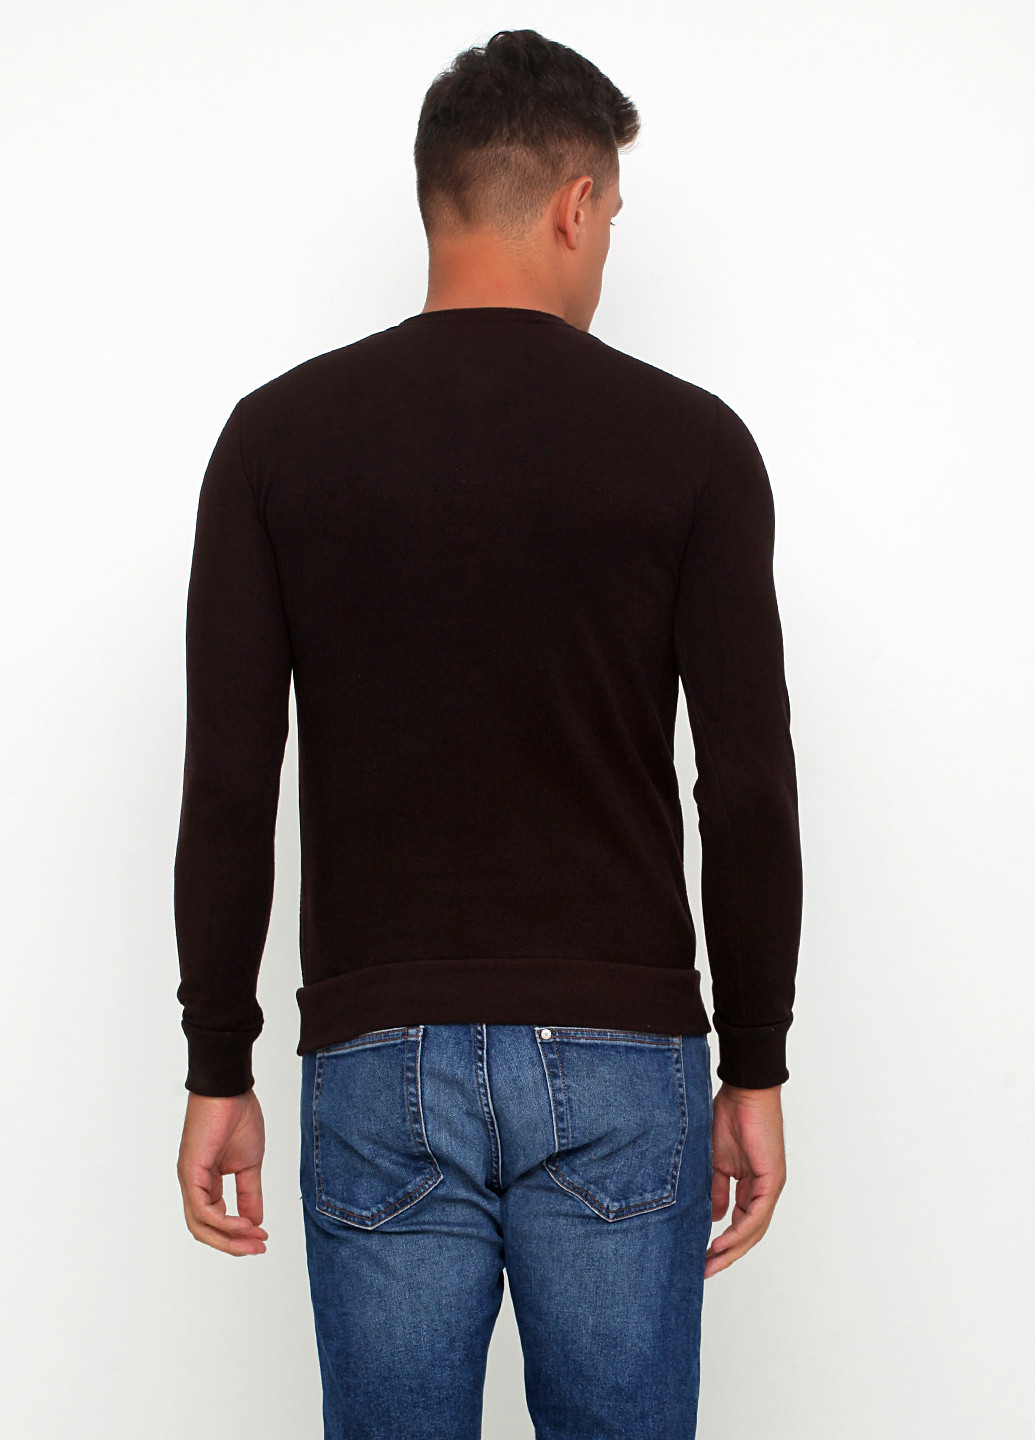 Коричневый демисезонный пуловер пуловер DKM